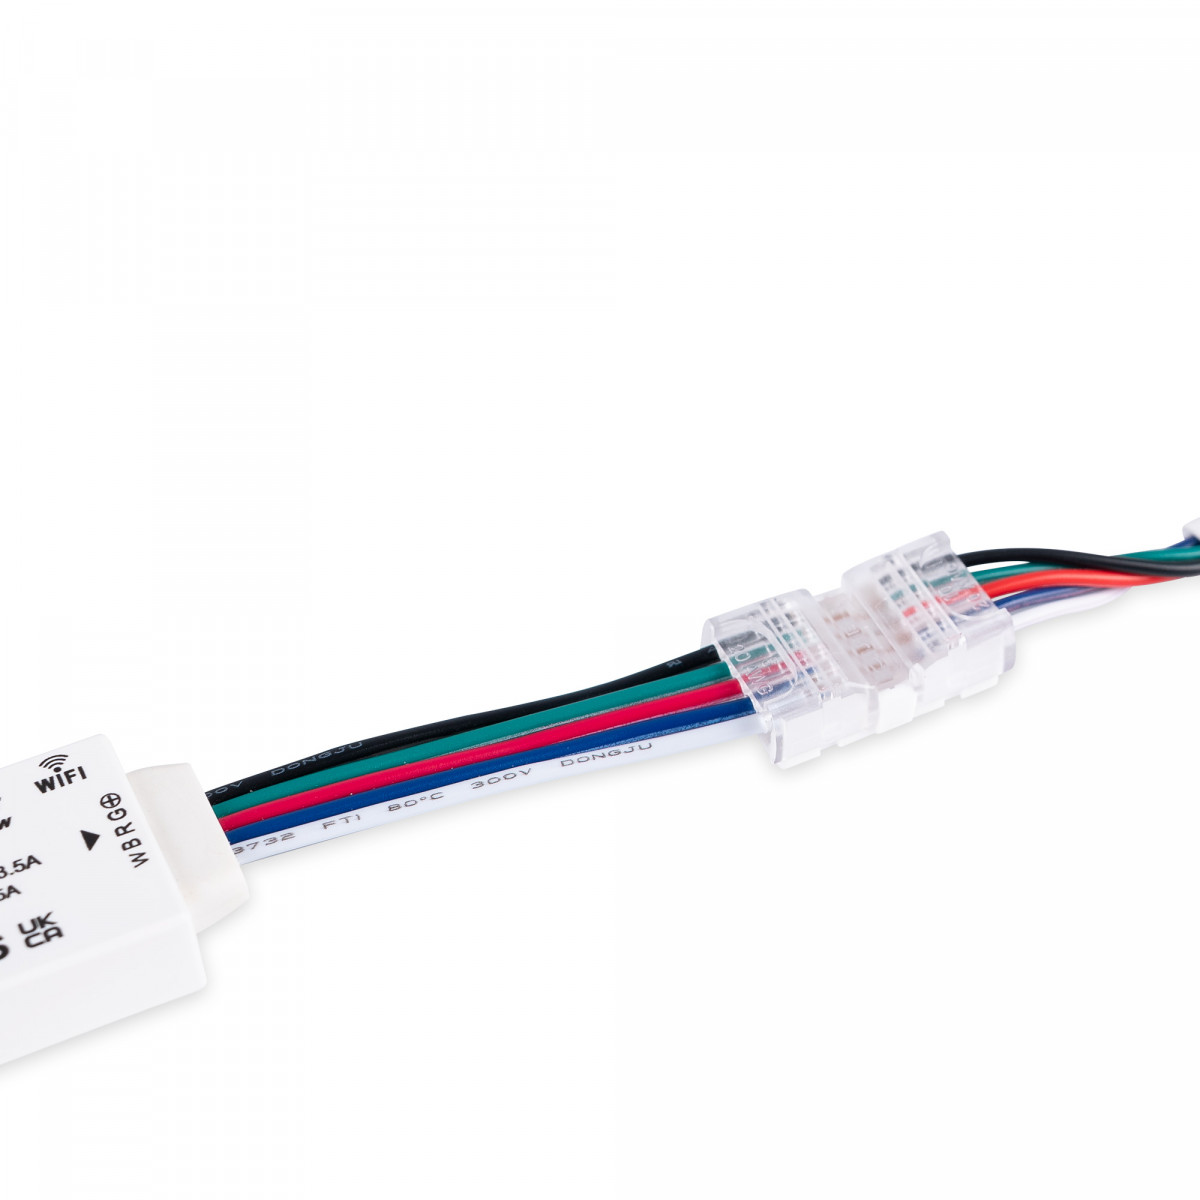 Connettore rapido cavo-cavo RGBW - 5 pin (5 fili)